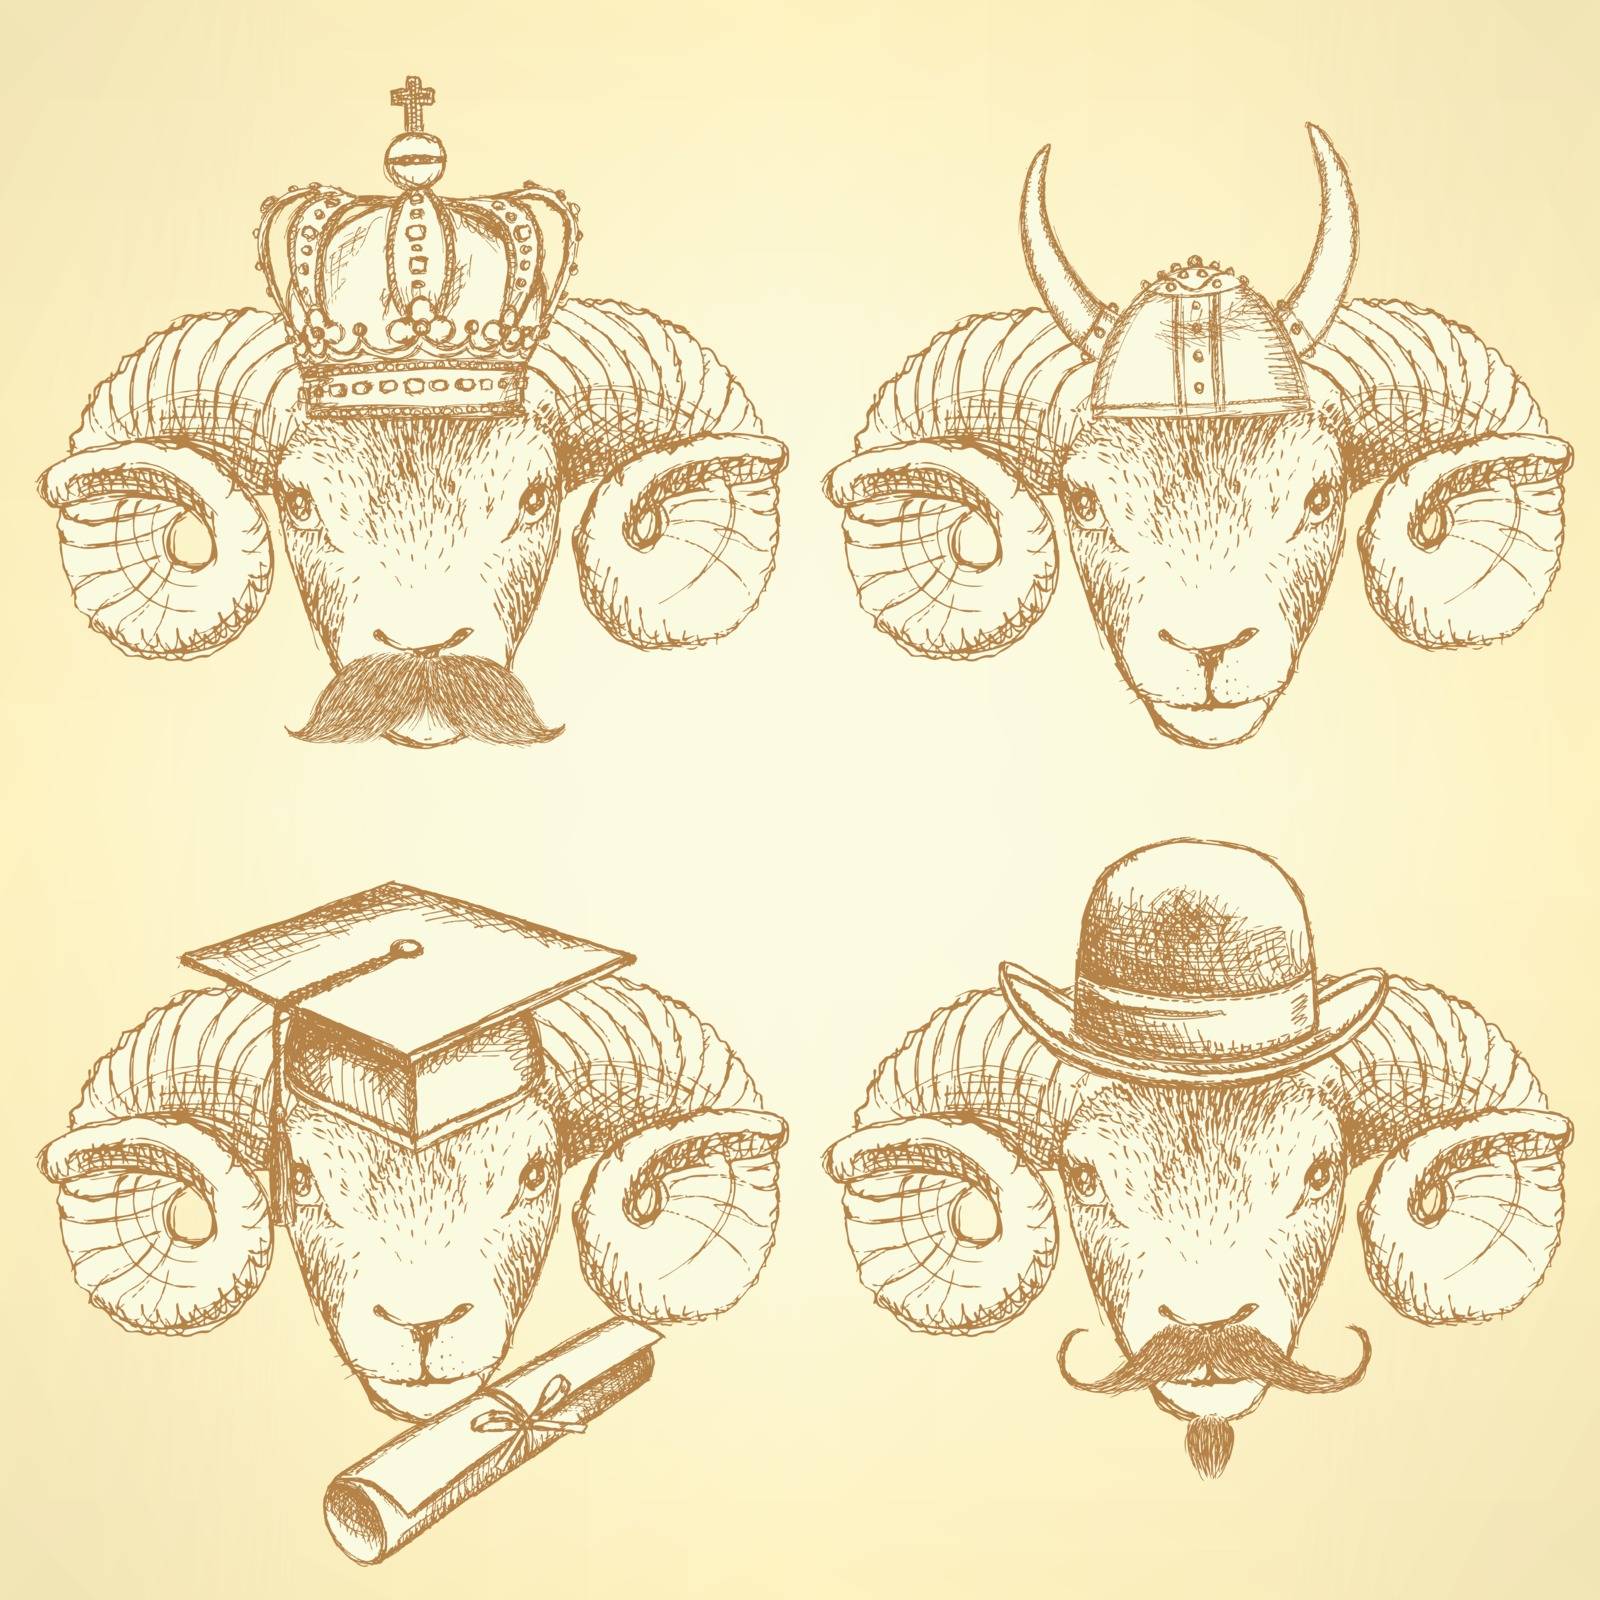 Sketch unusual rams set in vintage style
